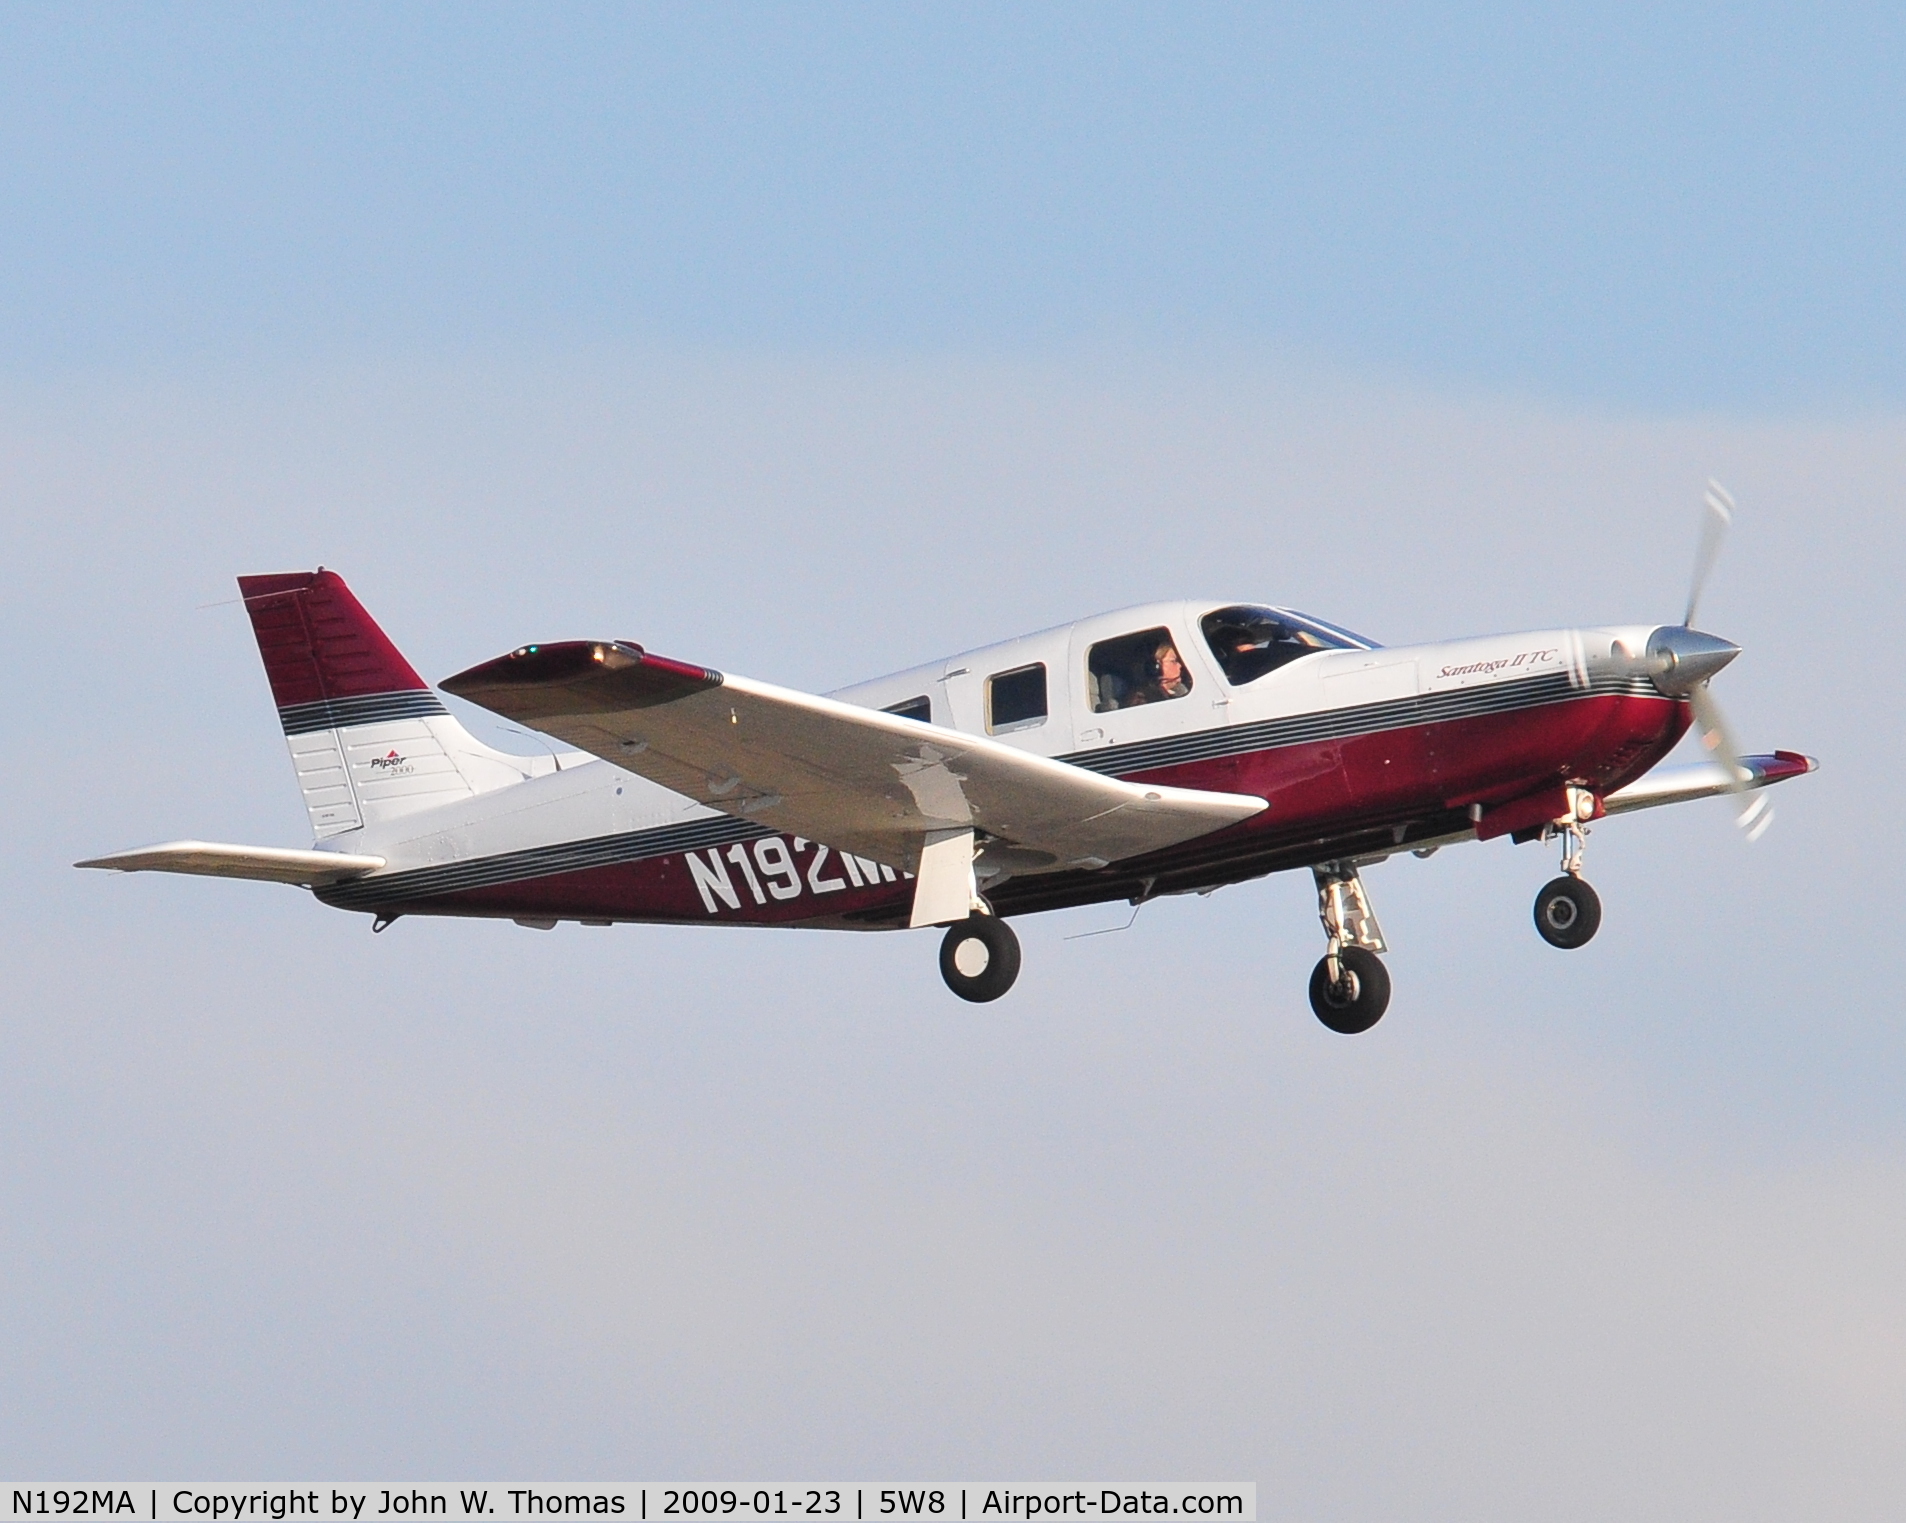 N192MA, 2000 Piper PA-32R-301T Turbo Saratoga C/N 3257192, Departing runway 22